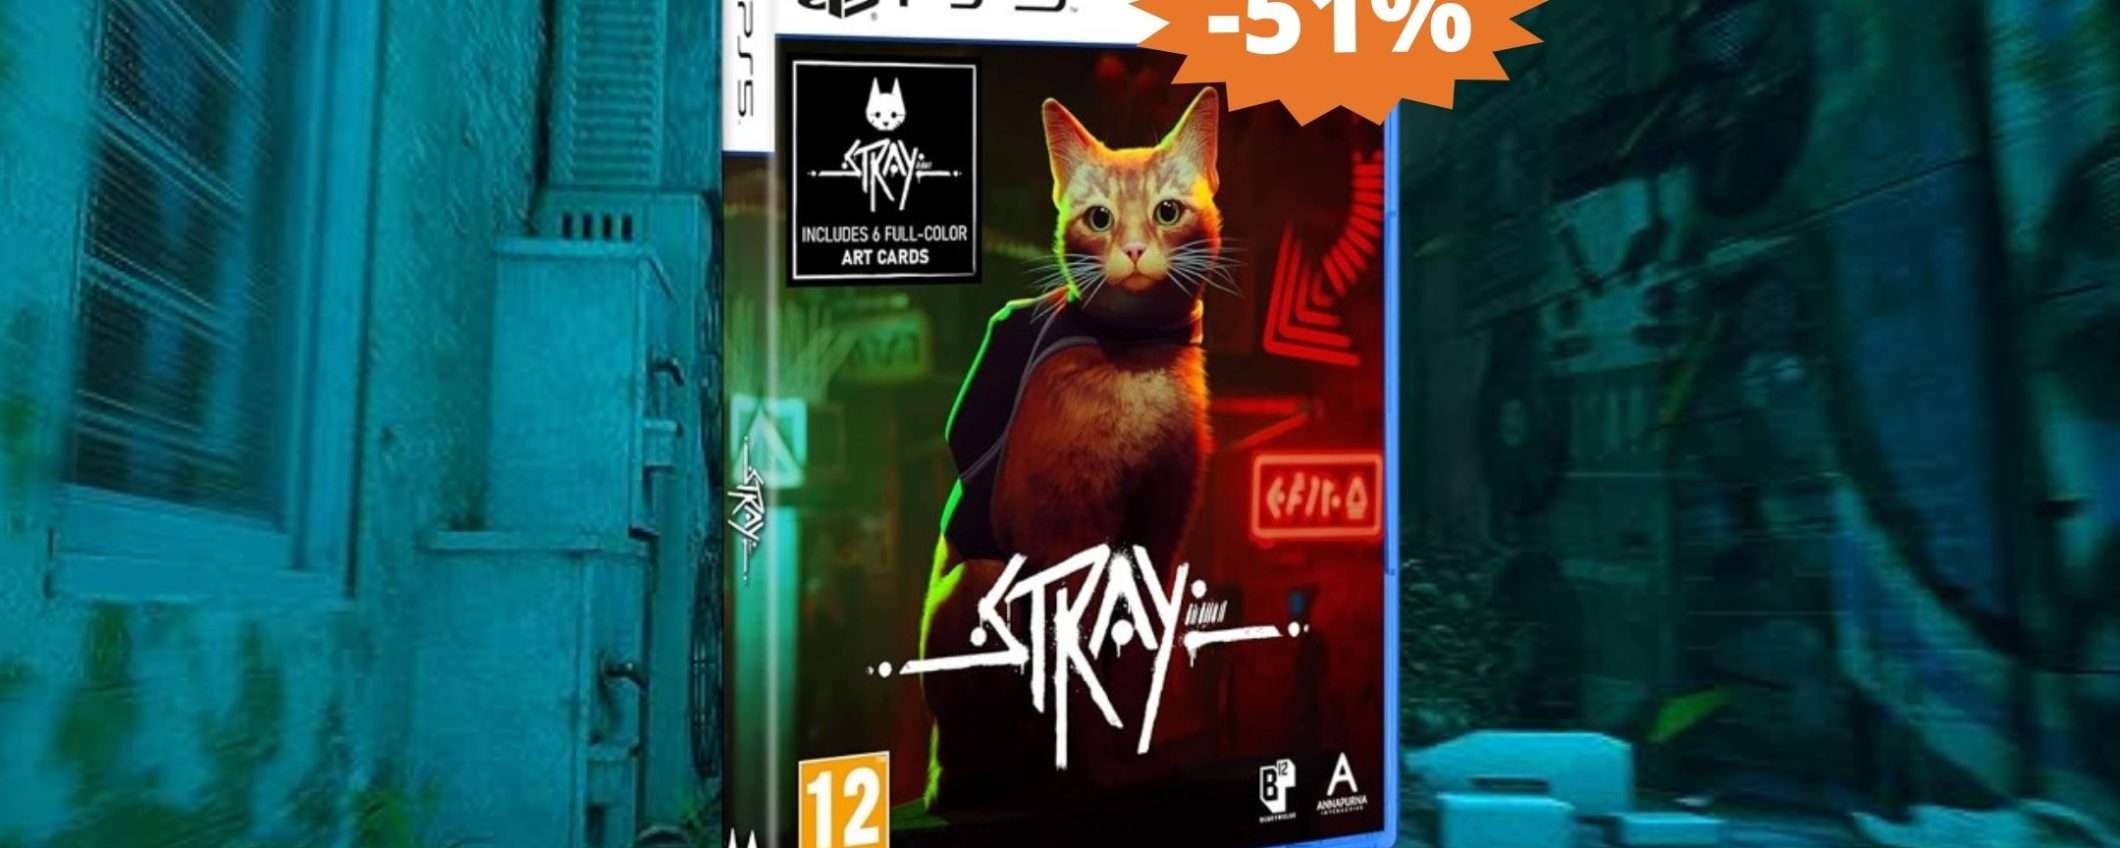 STRAY per PS5: il FASCINO della vita felina (-51%)